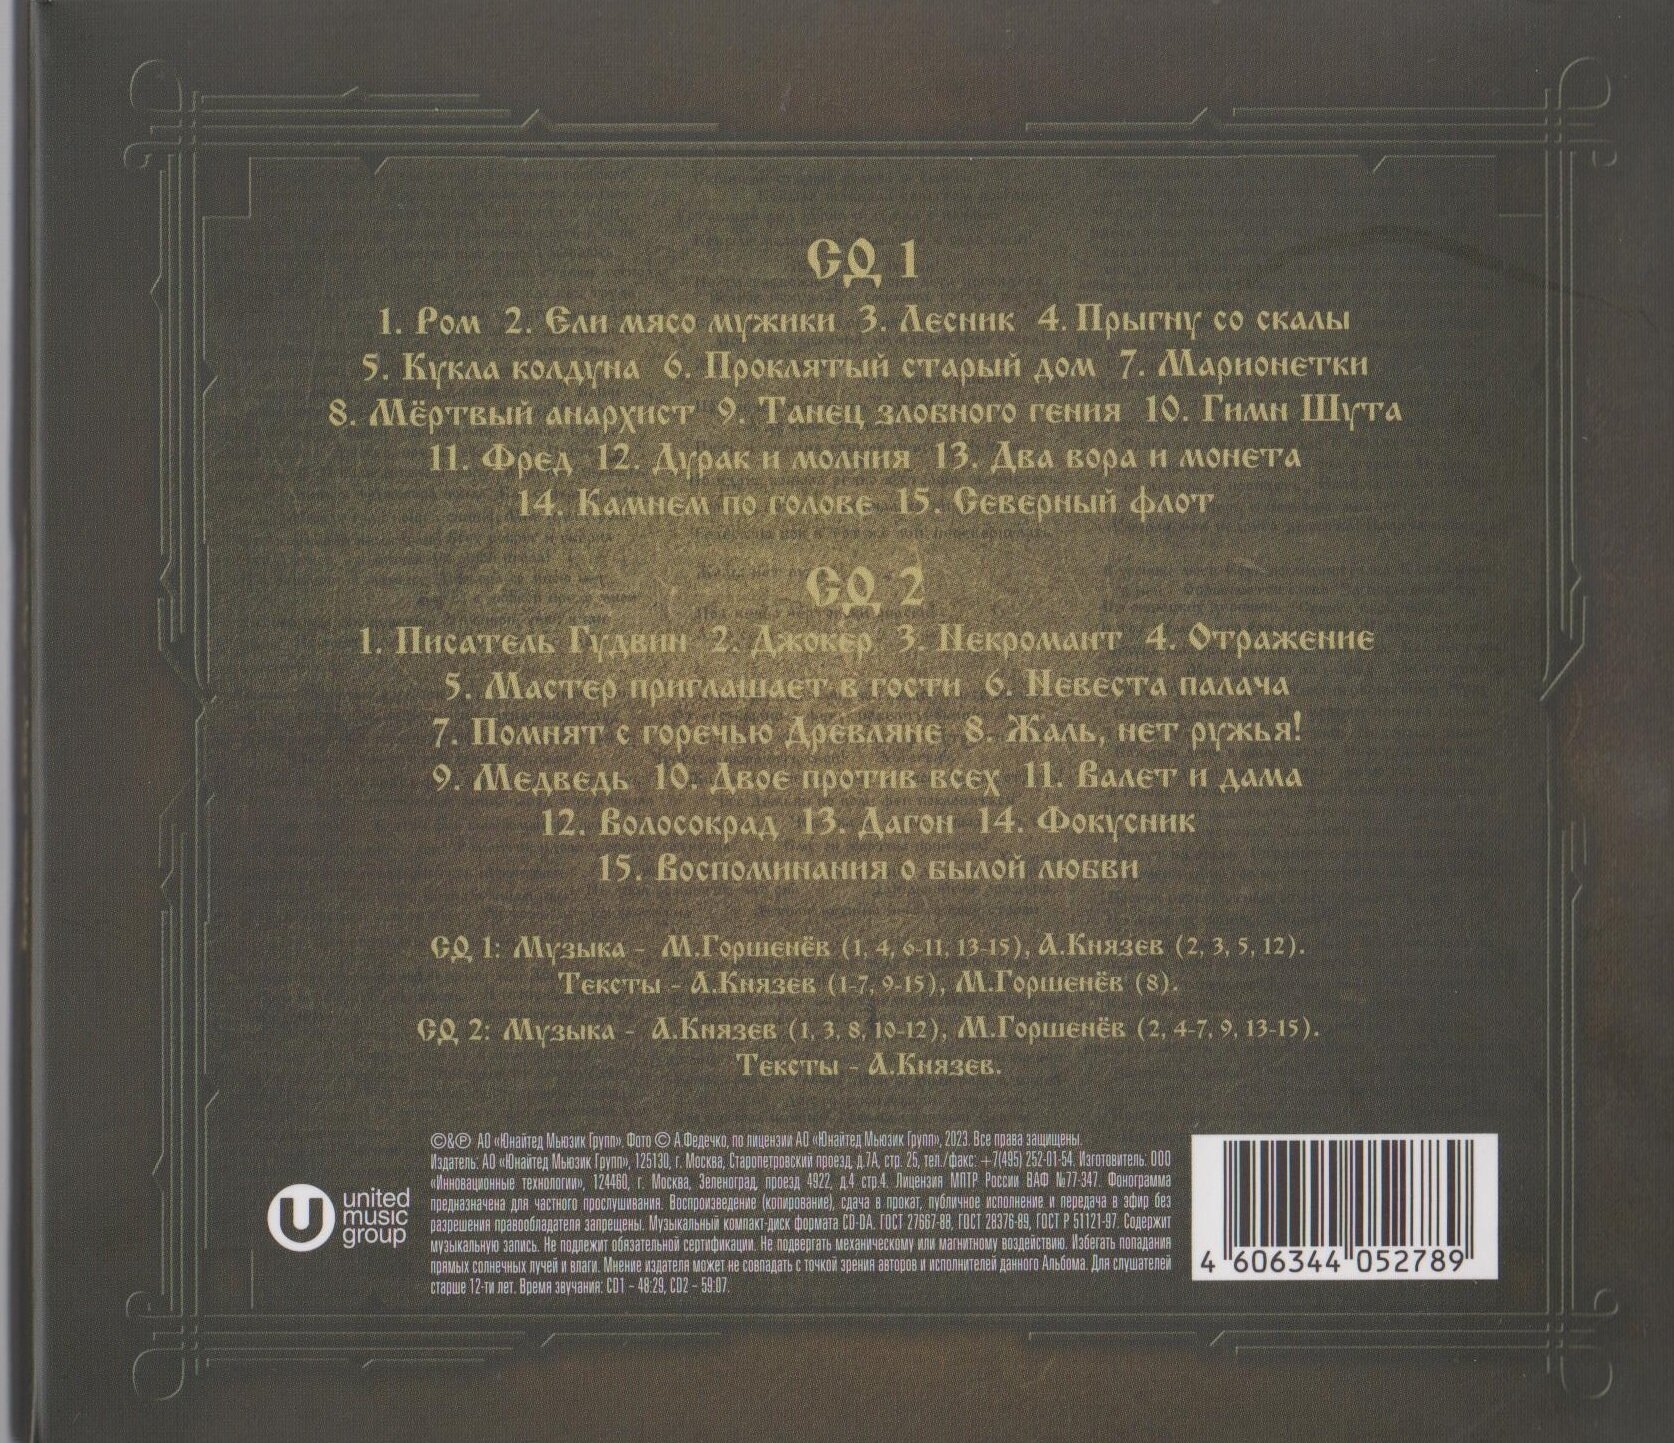 Компакт-диск Umg Король И Шут - Лучшее (2CD)